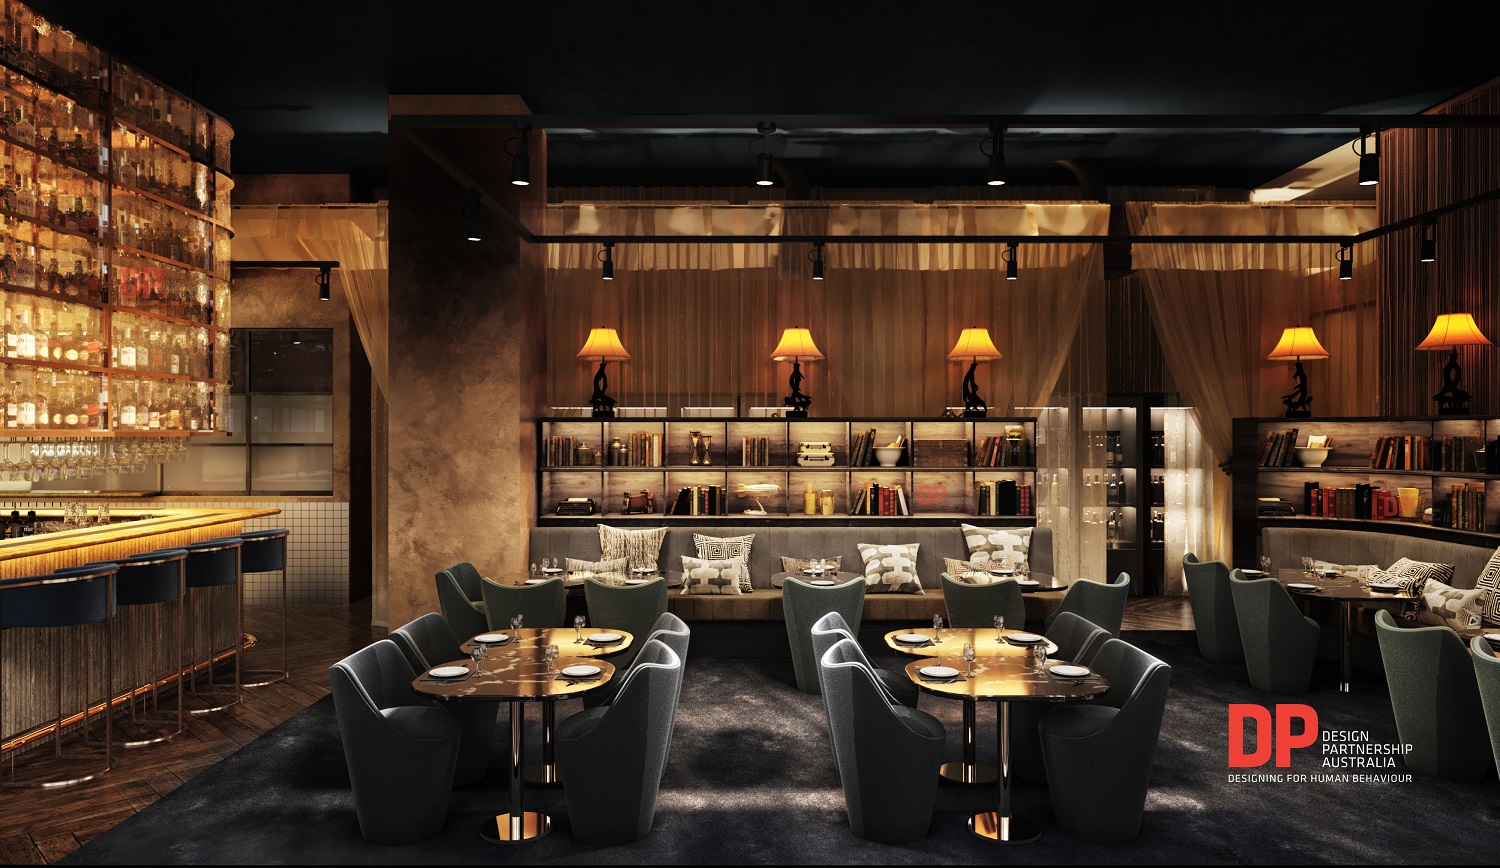 مطعم هانتر آند باريل يفتتح فرع جديد في إمارة دبي